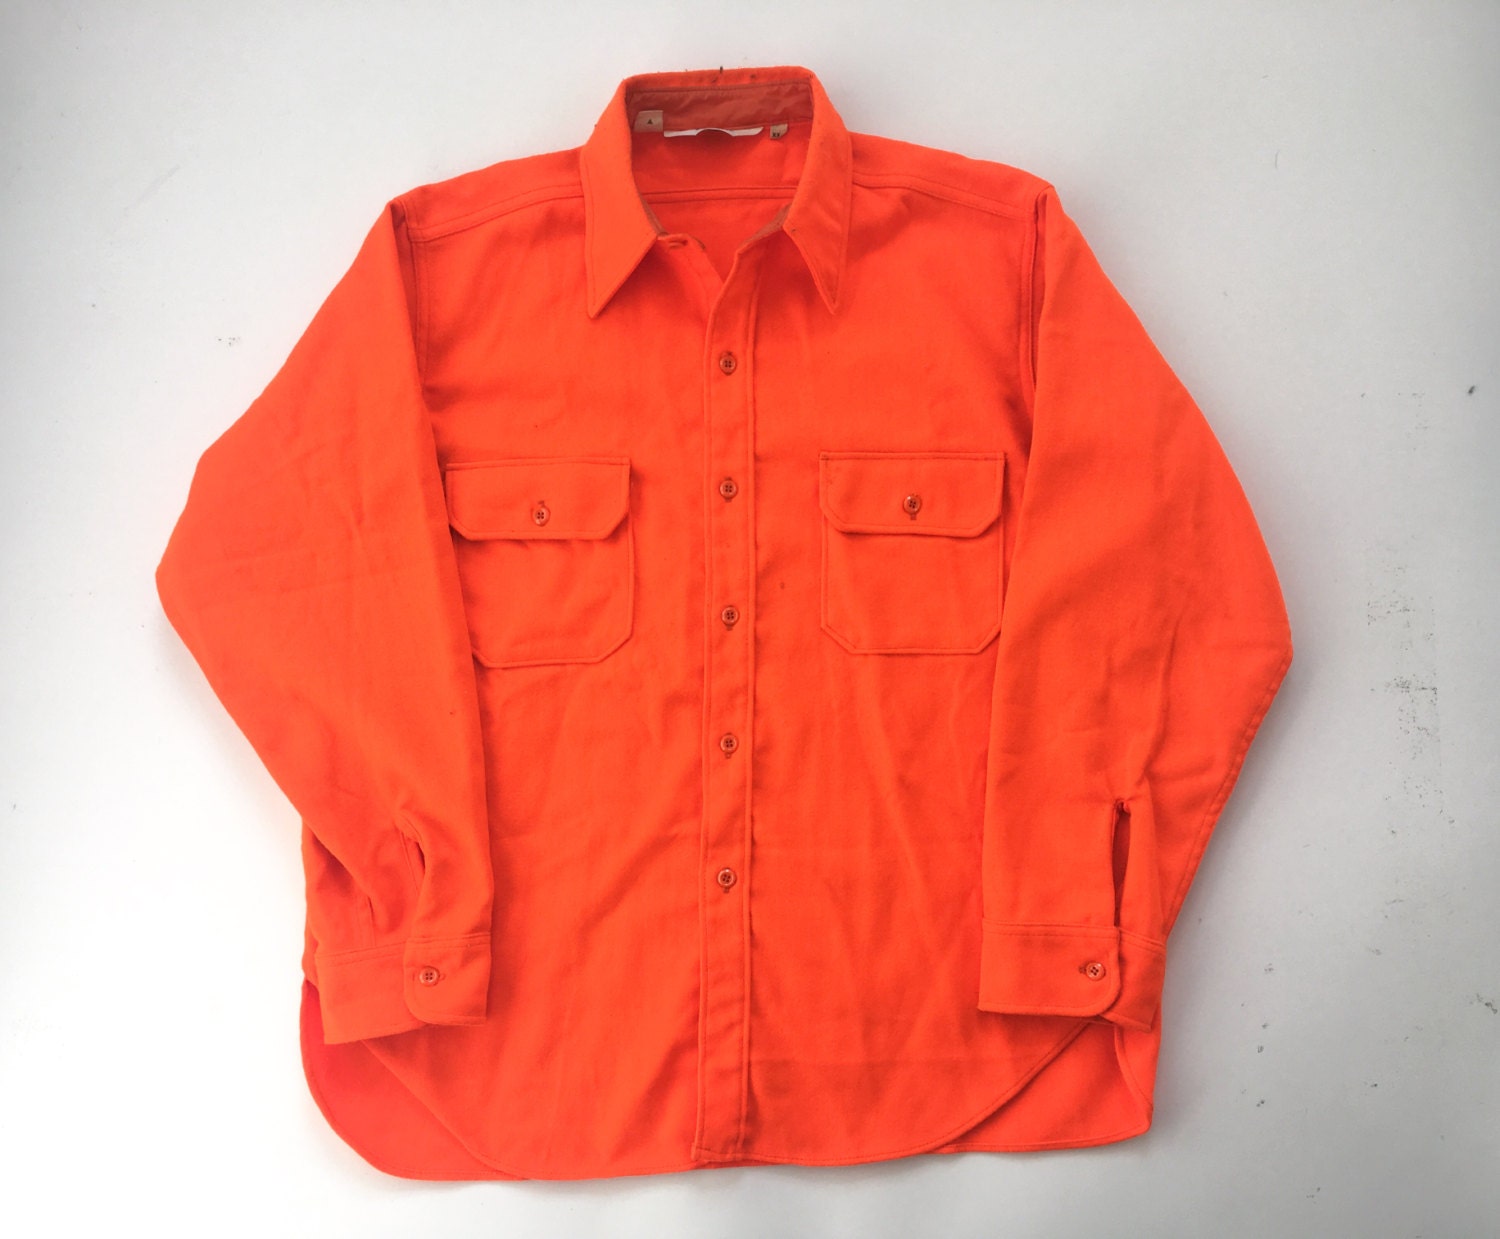 Vintage WOOLRICH bright orange thick button down shirt